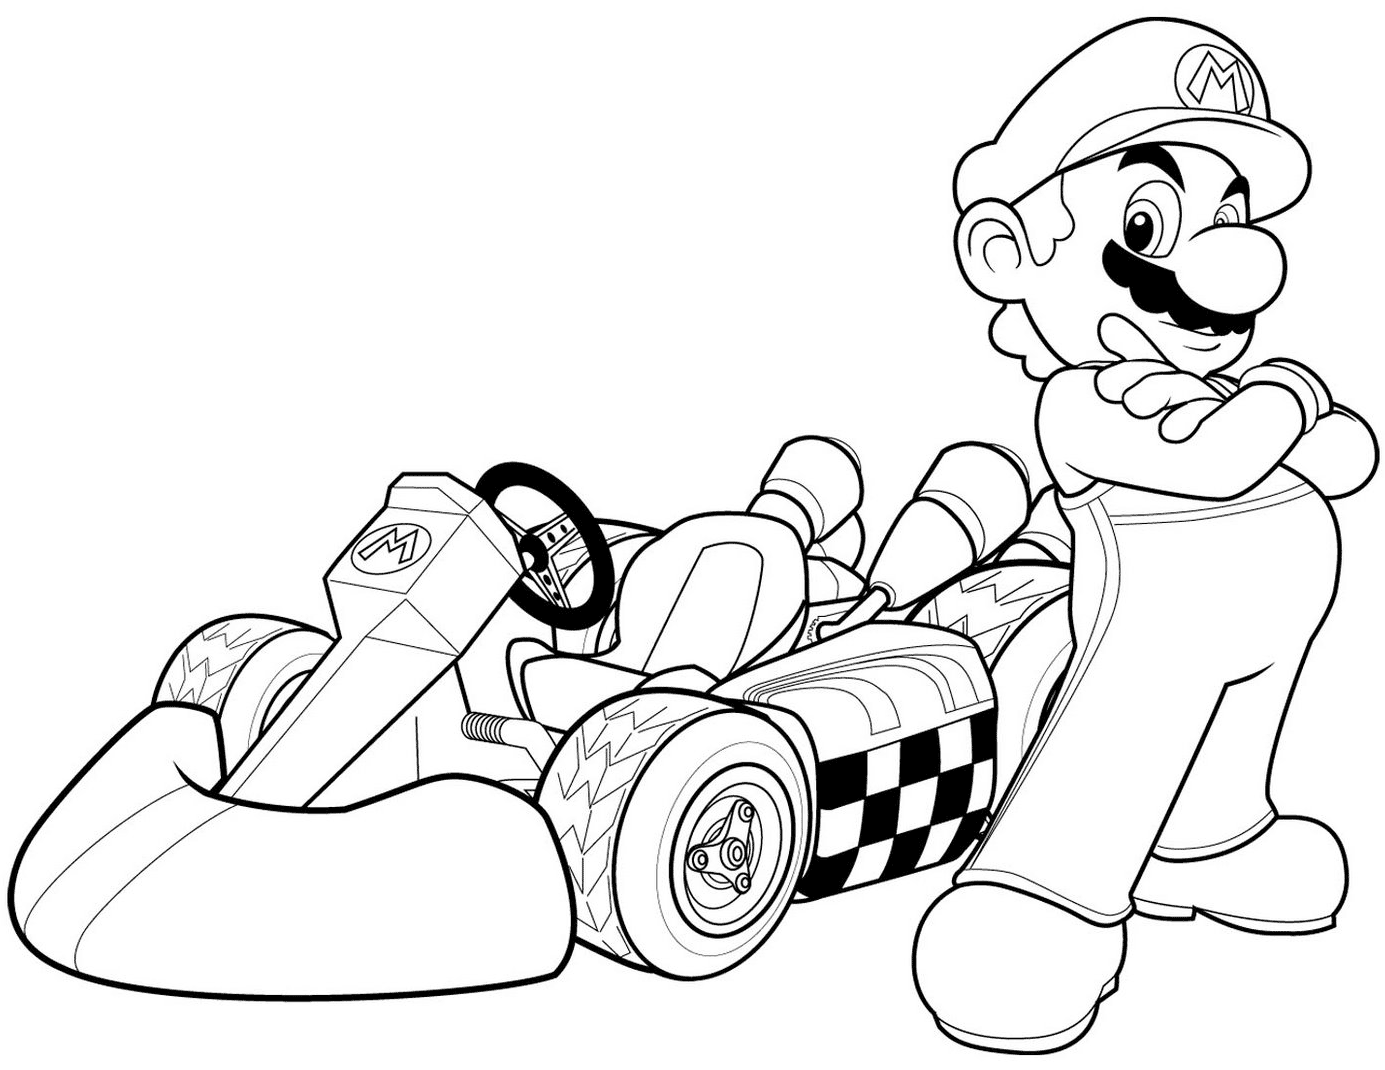 Mario In Mario Kart Wii Coloring Page